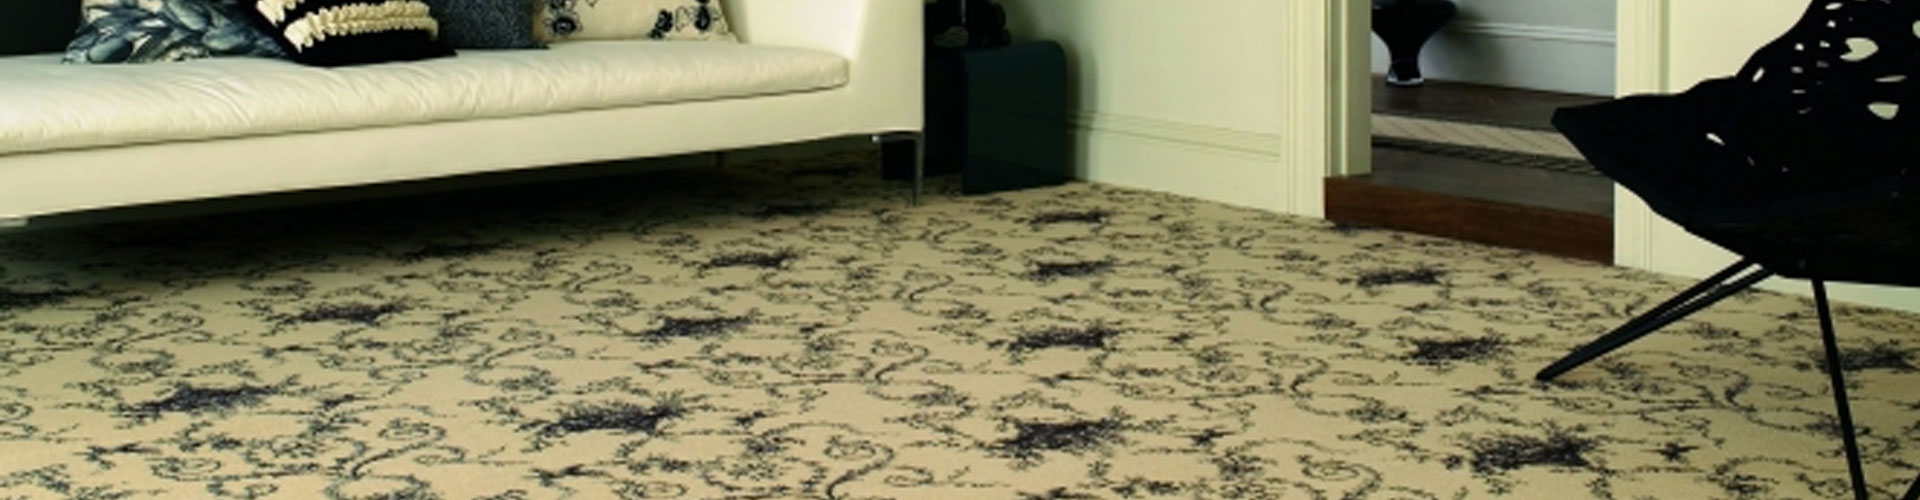 brintons-carpets